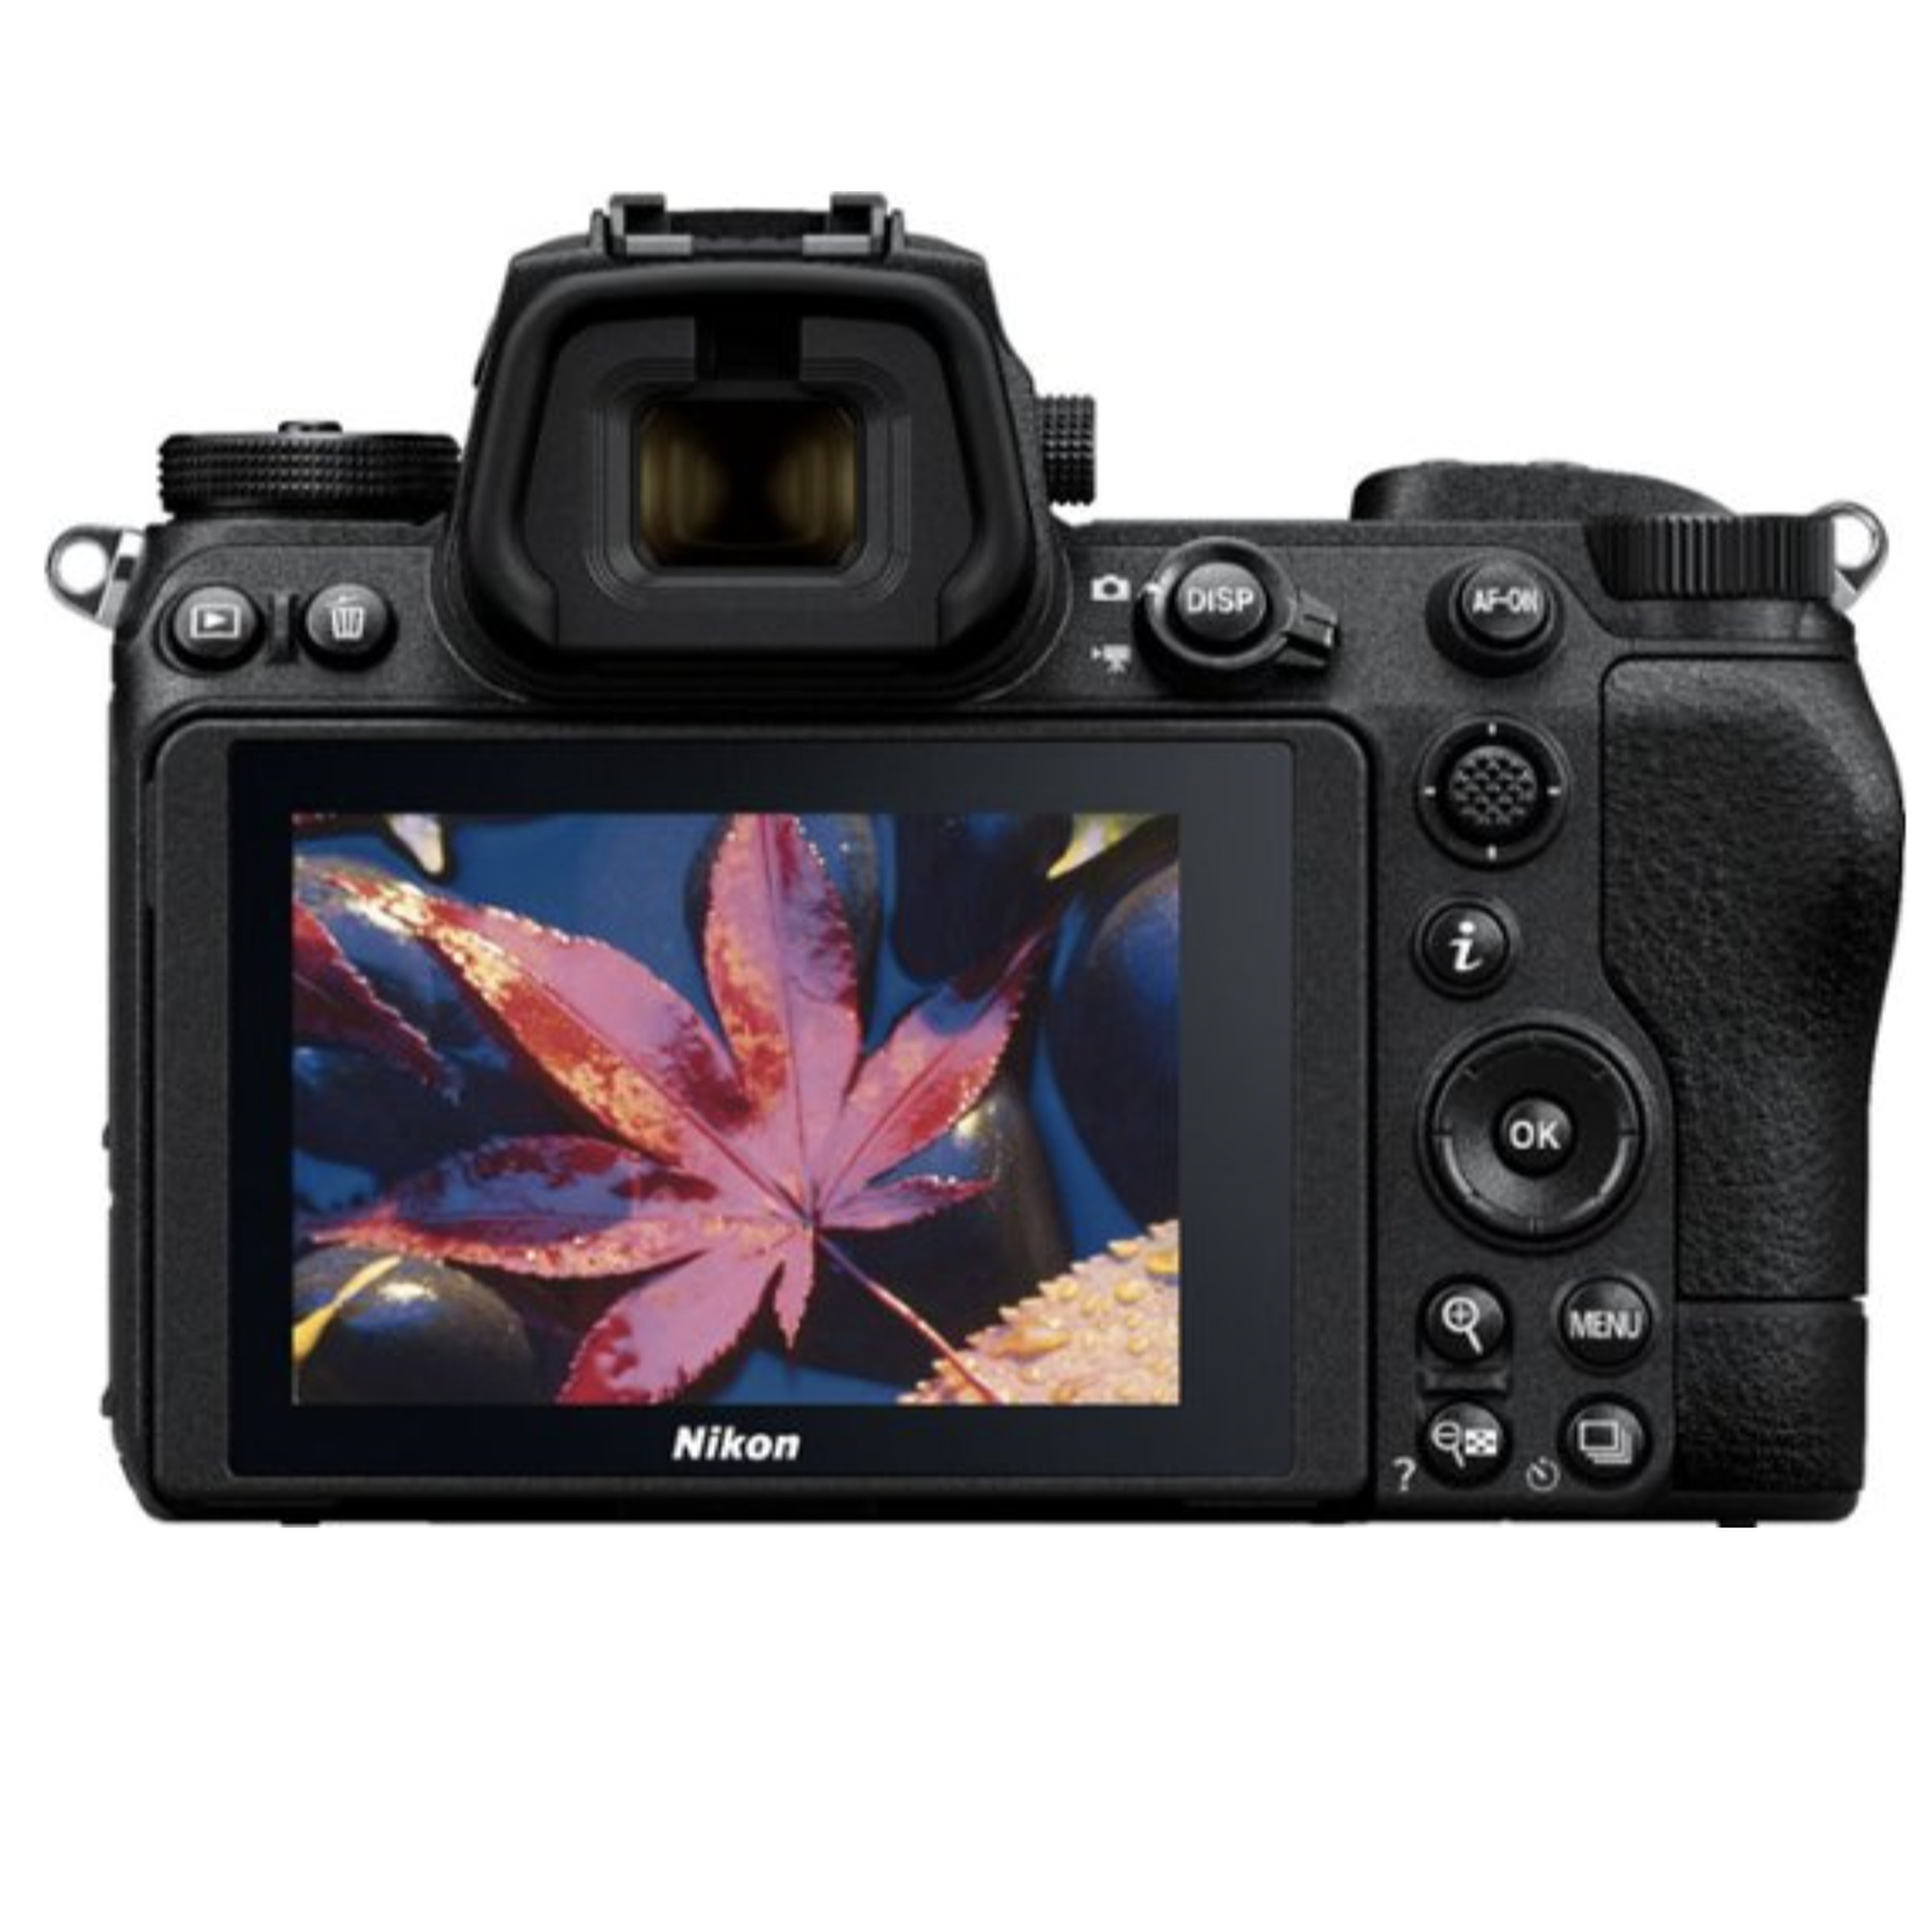 Vizörde çiçek görünen Nikon fotoğraf makinesinin arkası